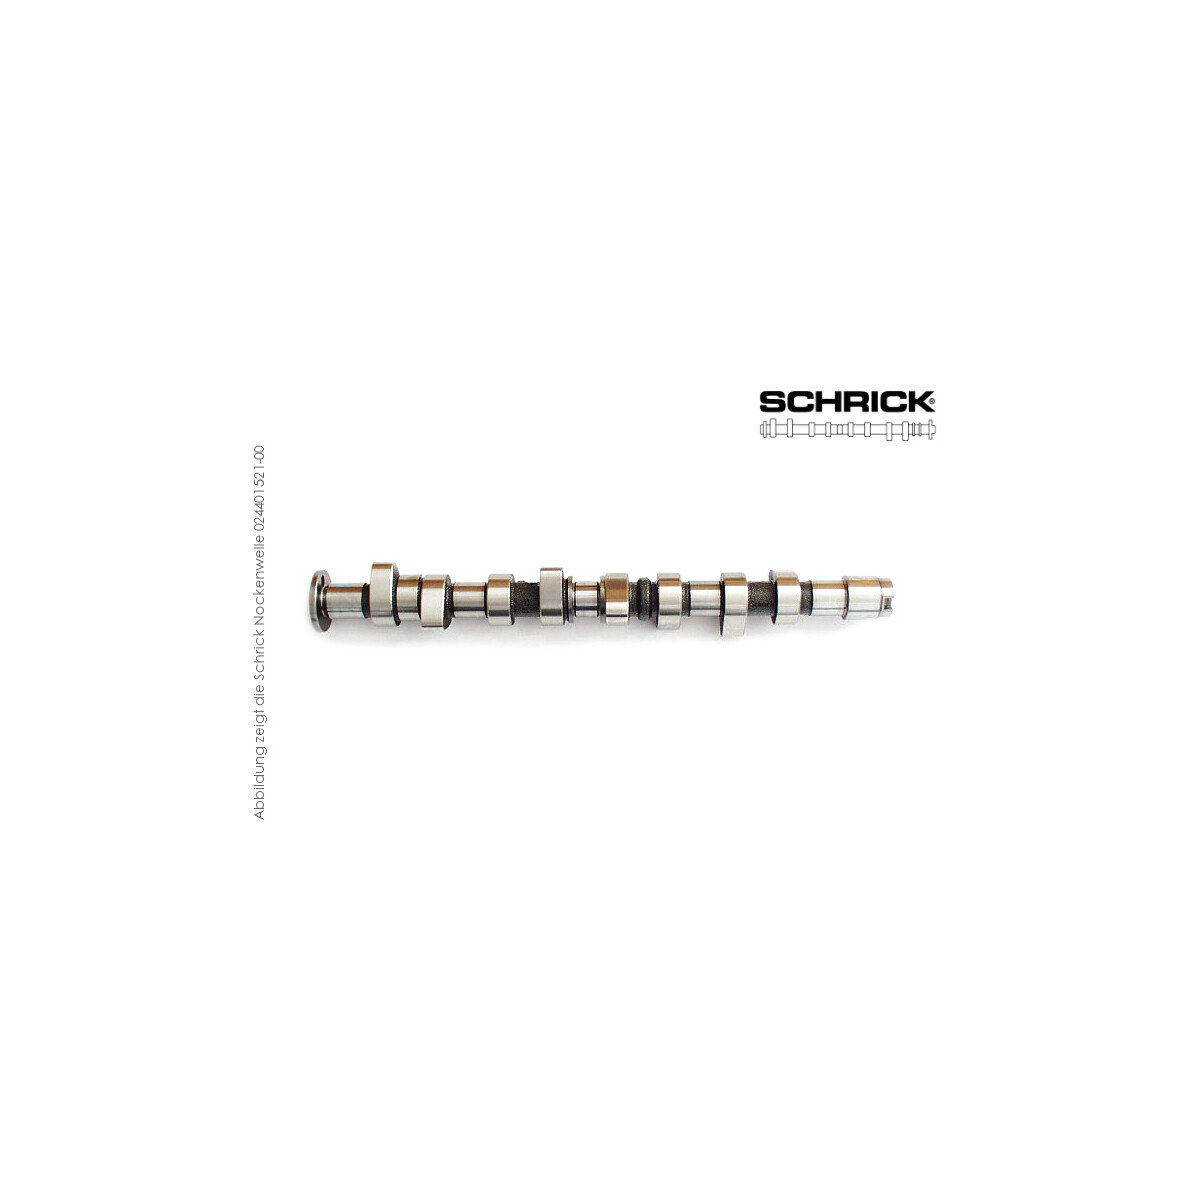 Schrick Nockenwelle für Audi 80, 90 | 1,5-2,0L 8V 4-Zyl. 827  | 260° Synchron (Schrick 001401601-01)